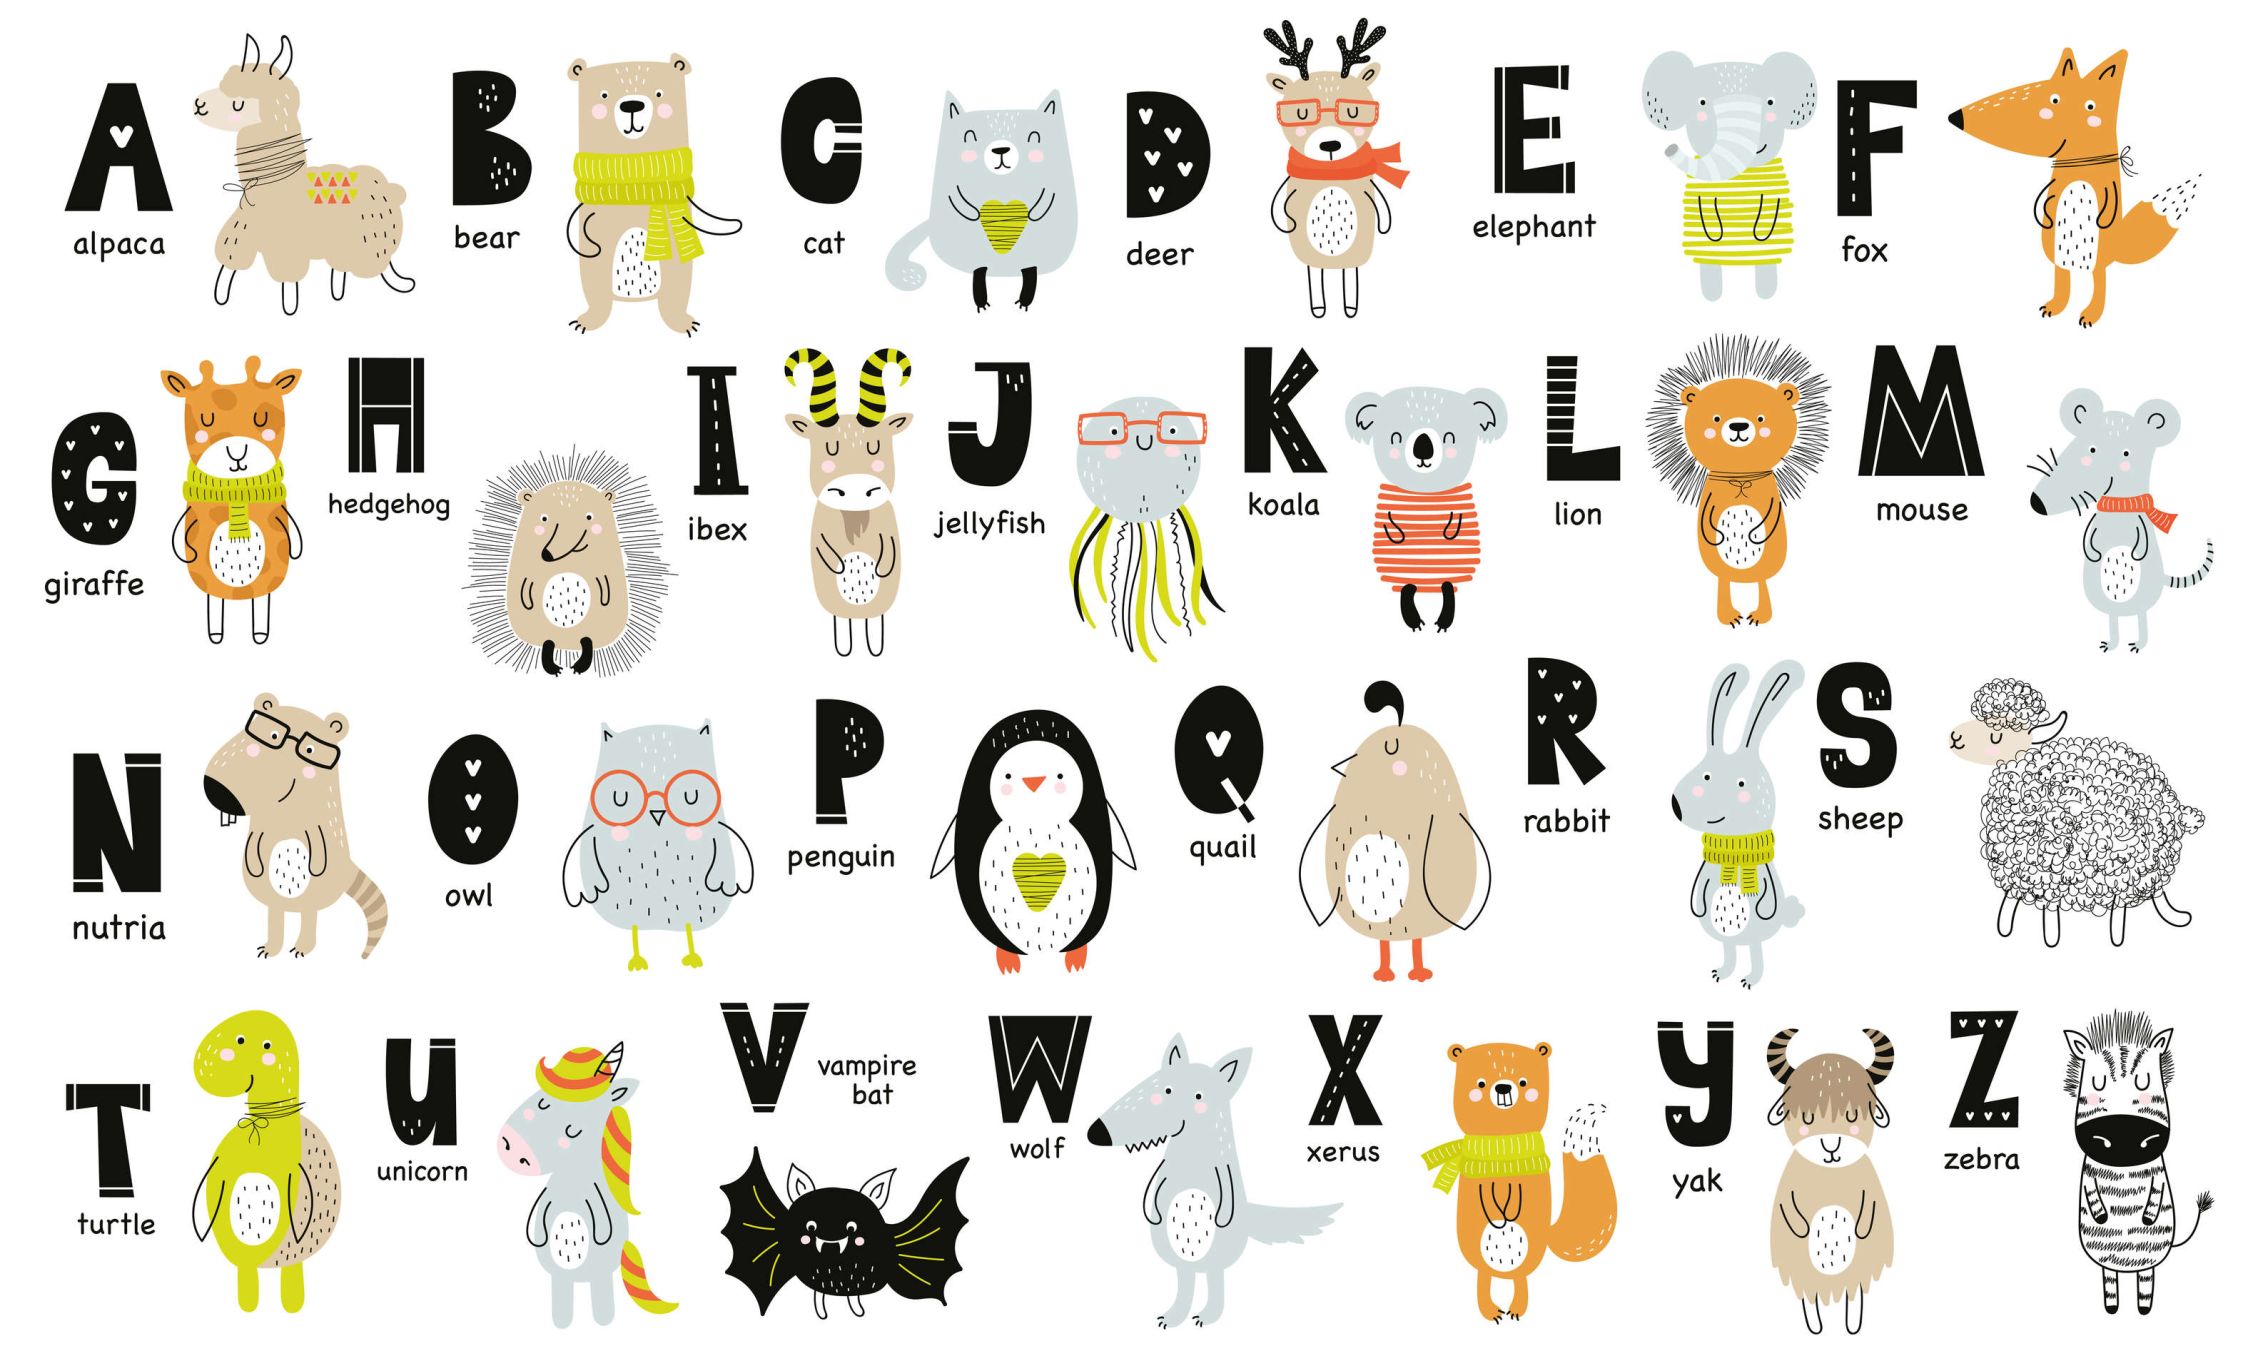             Fotomural Alfabeto con animales y nombres de animales - No tejido liso y ligeramente brillante
        